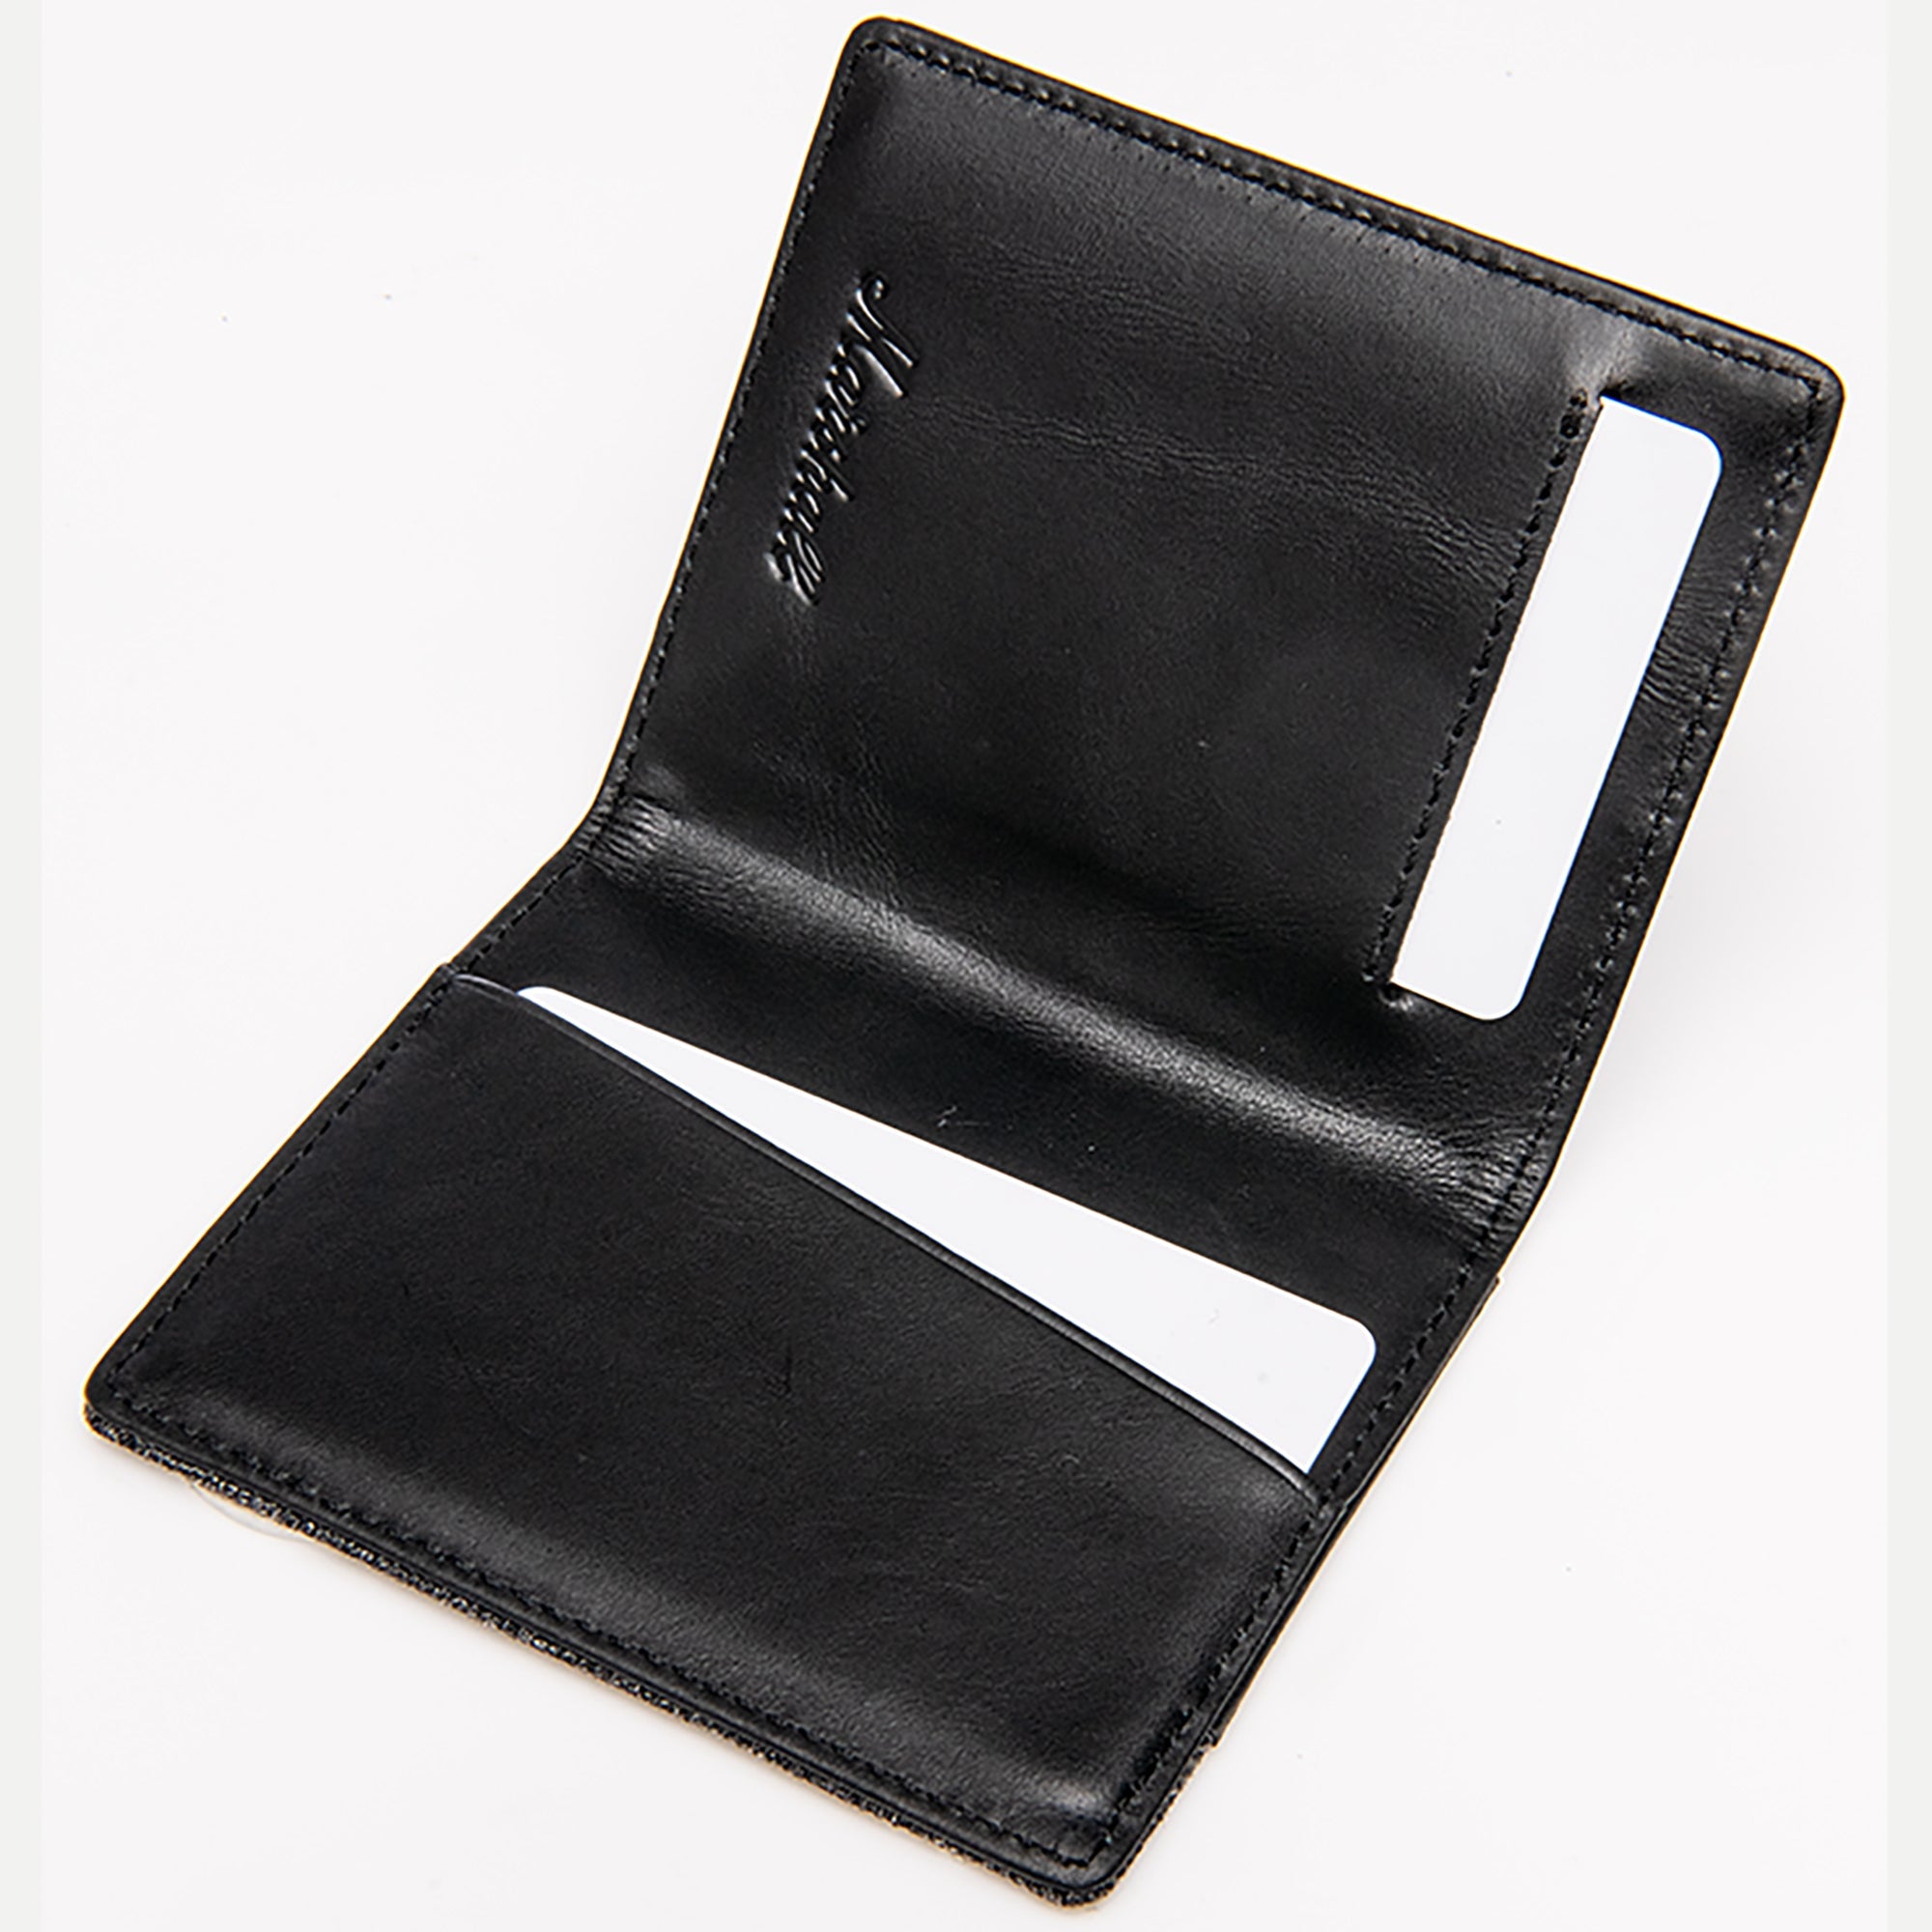 Portefeuille Denim & Leather de MARSHALL TRAVEL - Porte-cartes simple et essentiel